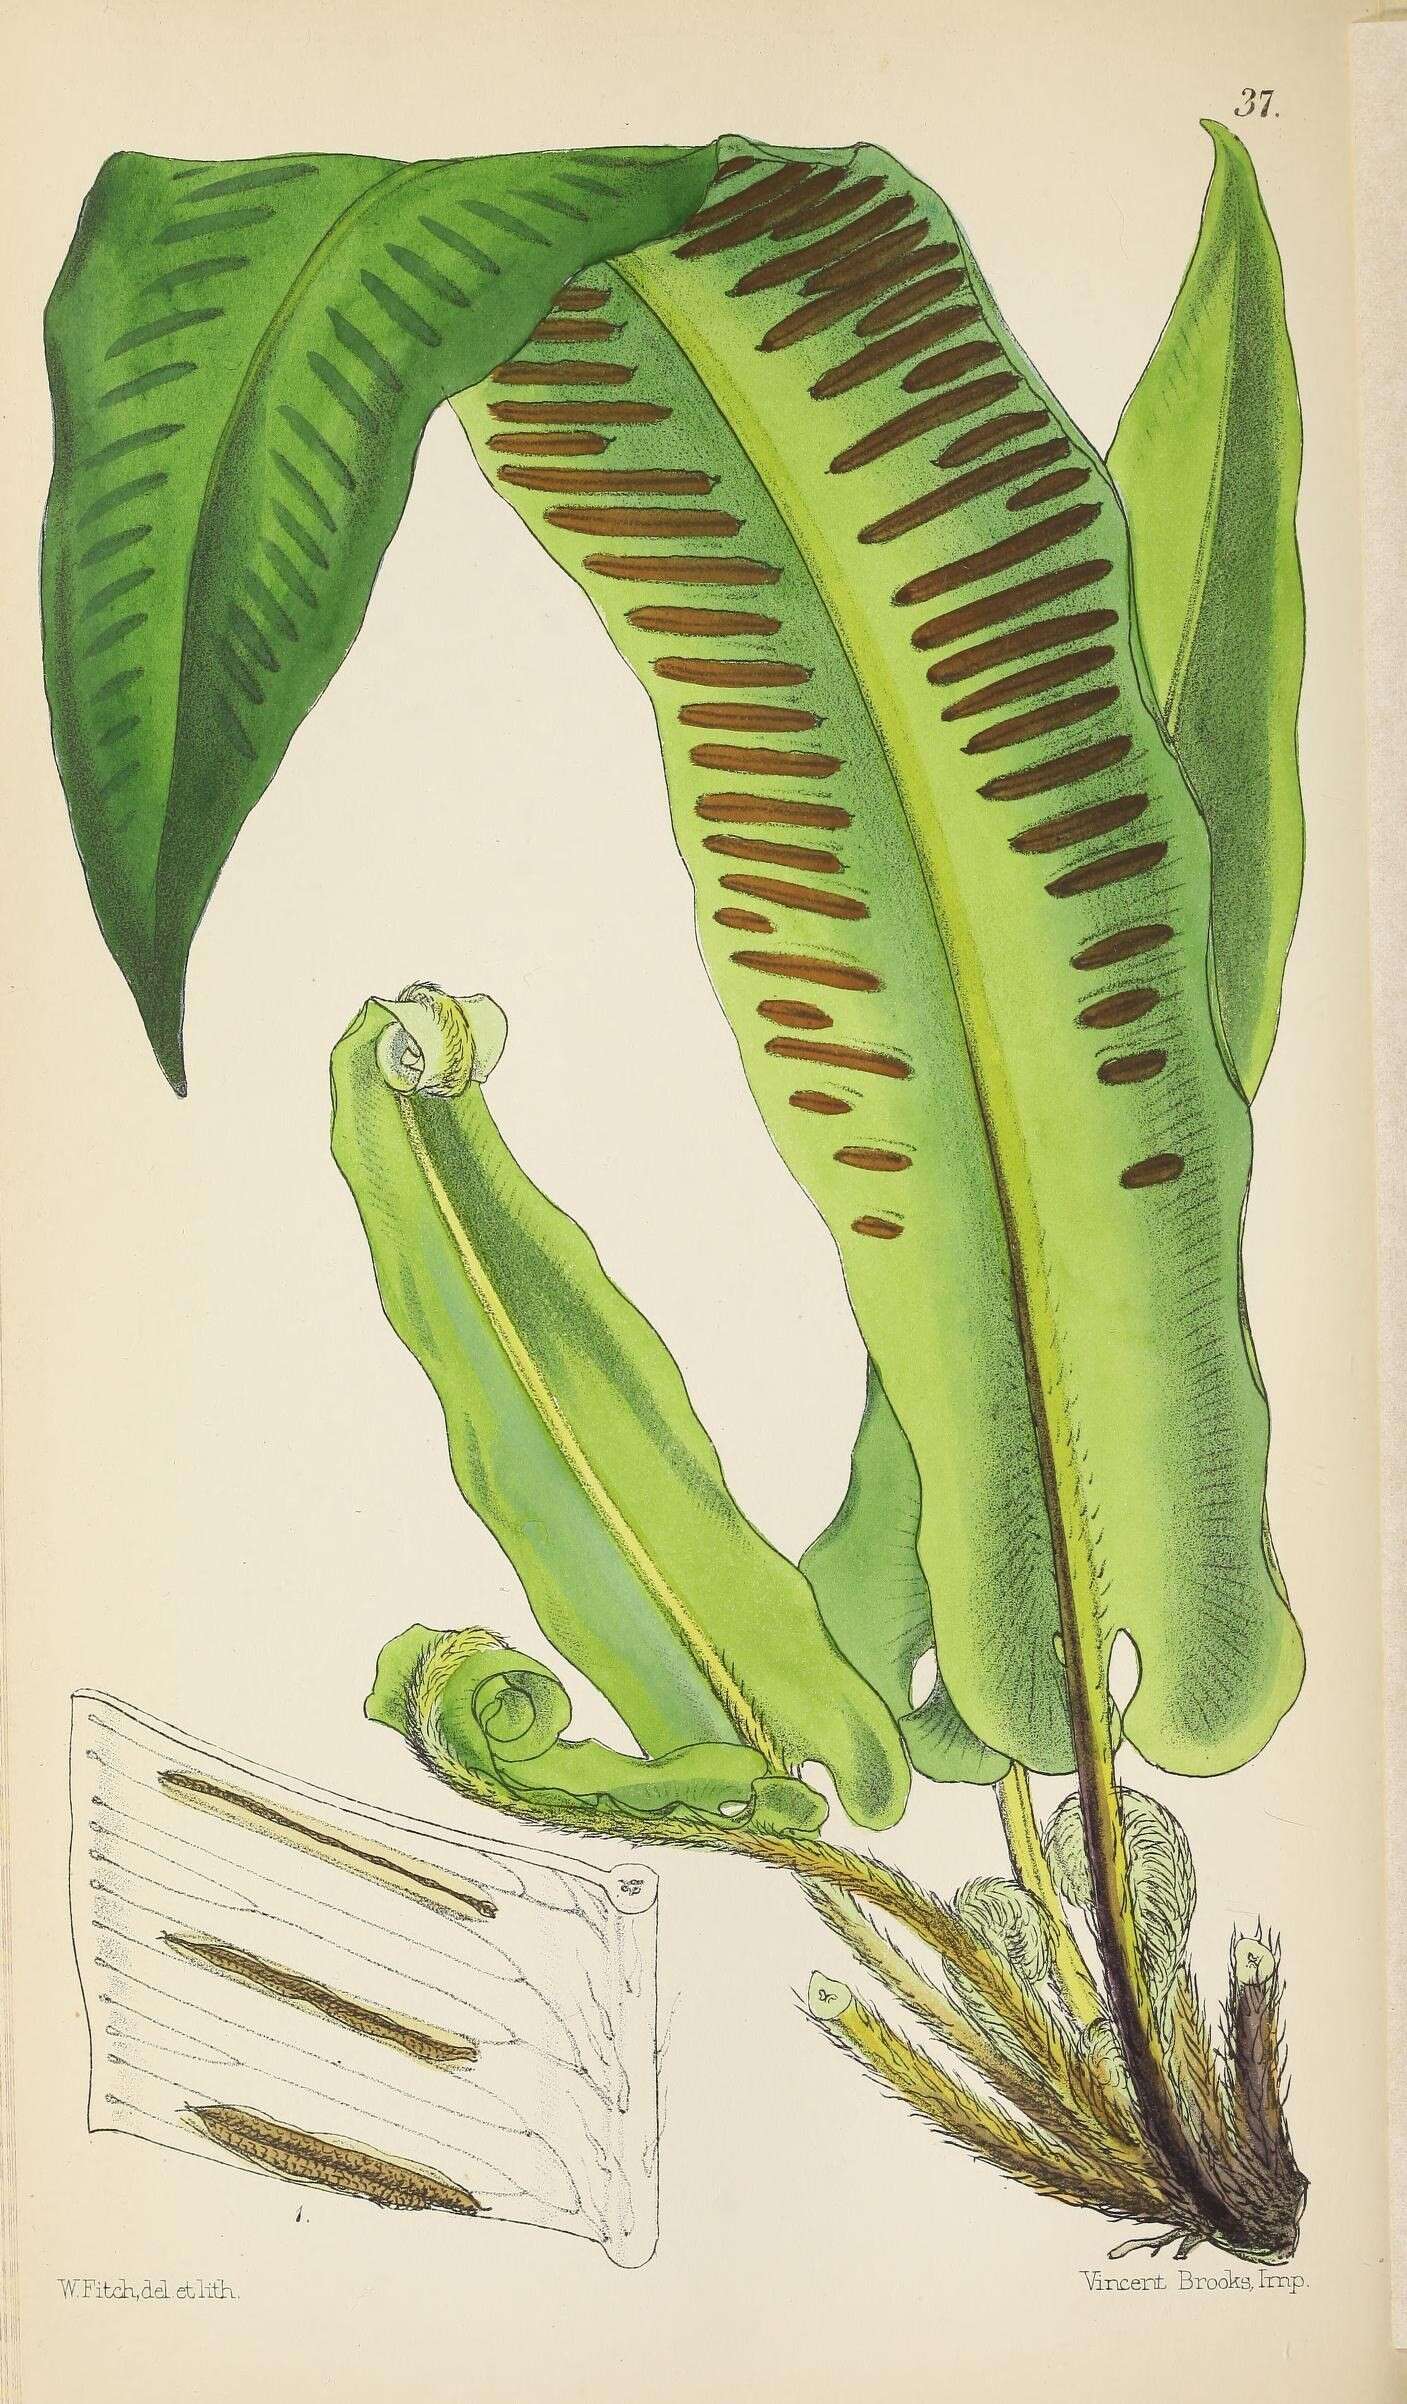 Image of Asplenium scolopendrium subsp. scolopendrium